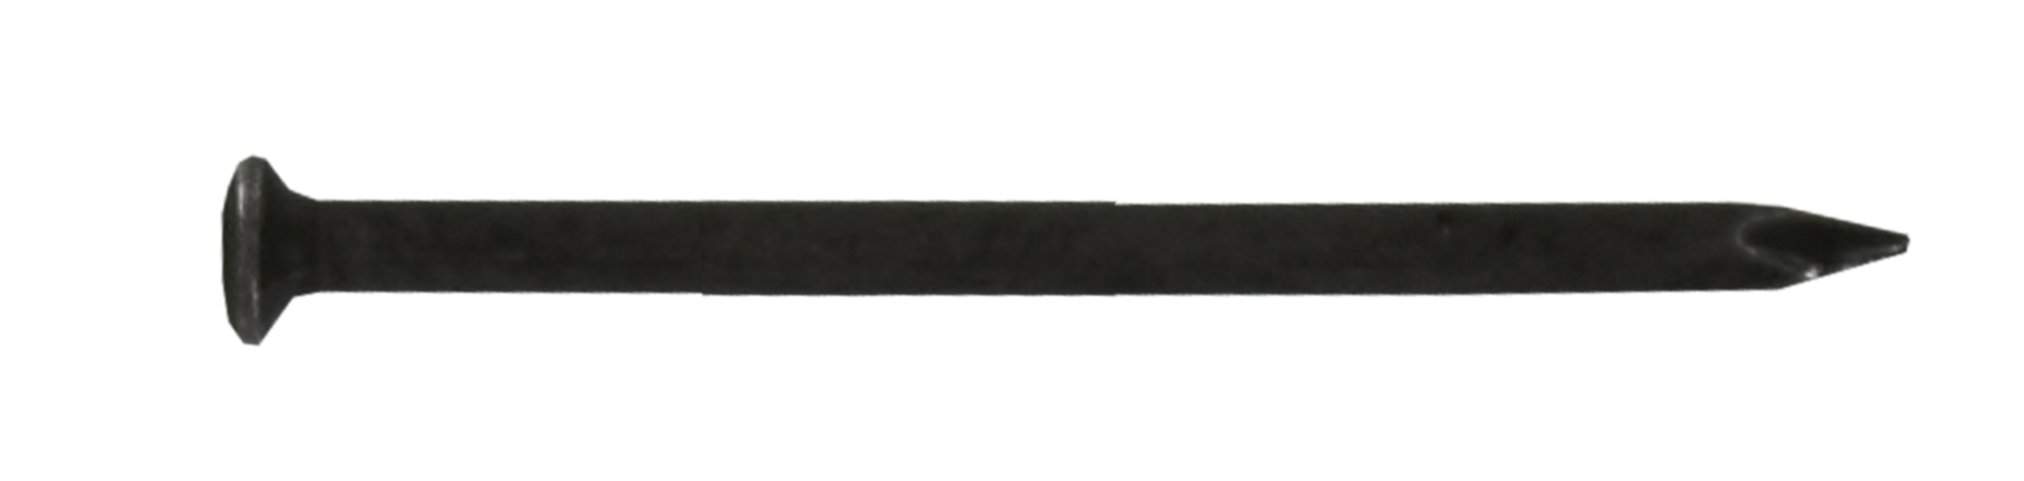 Pointe à tête ronde acier trempé 2x25mm, sachet de 80 grammes.